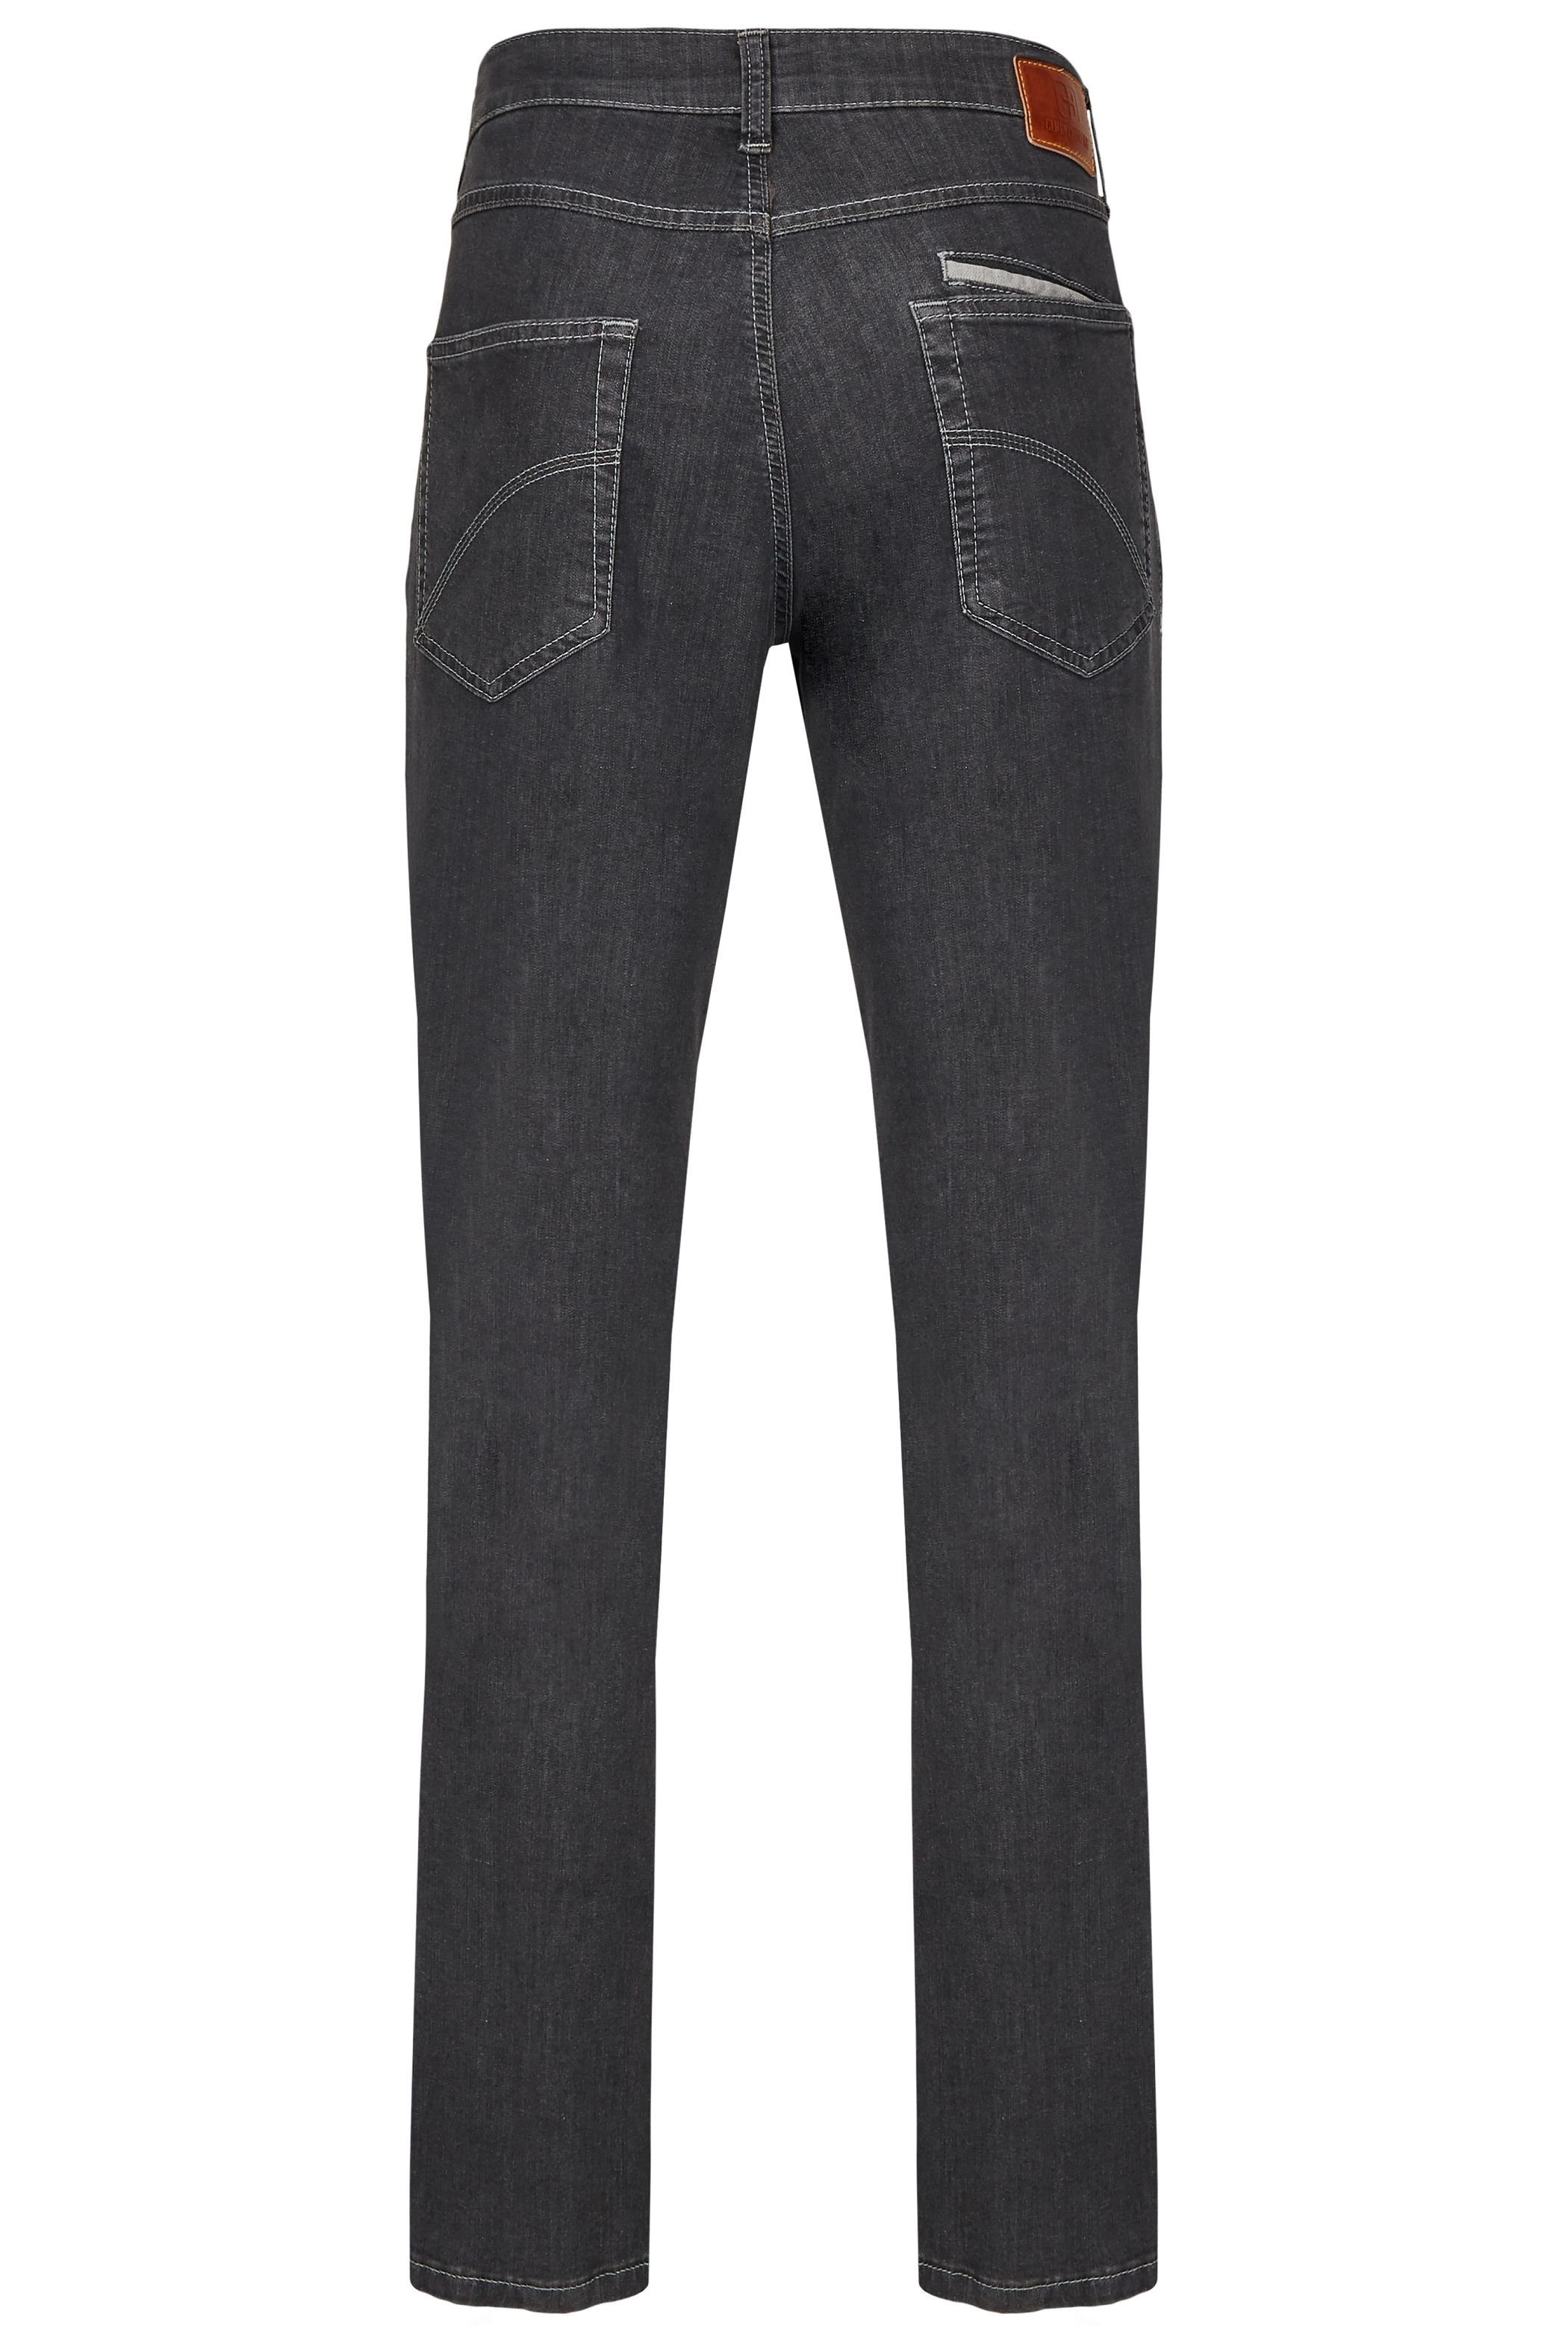 Club HENRY of Comfort Slim-fit-Jeans mit elastischem anthrazit X6516 Komfortbund